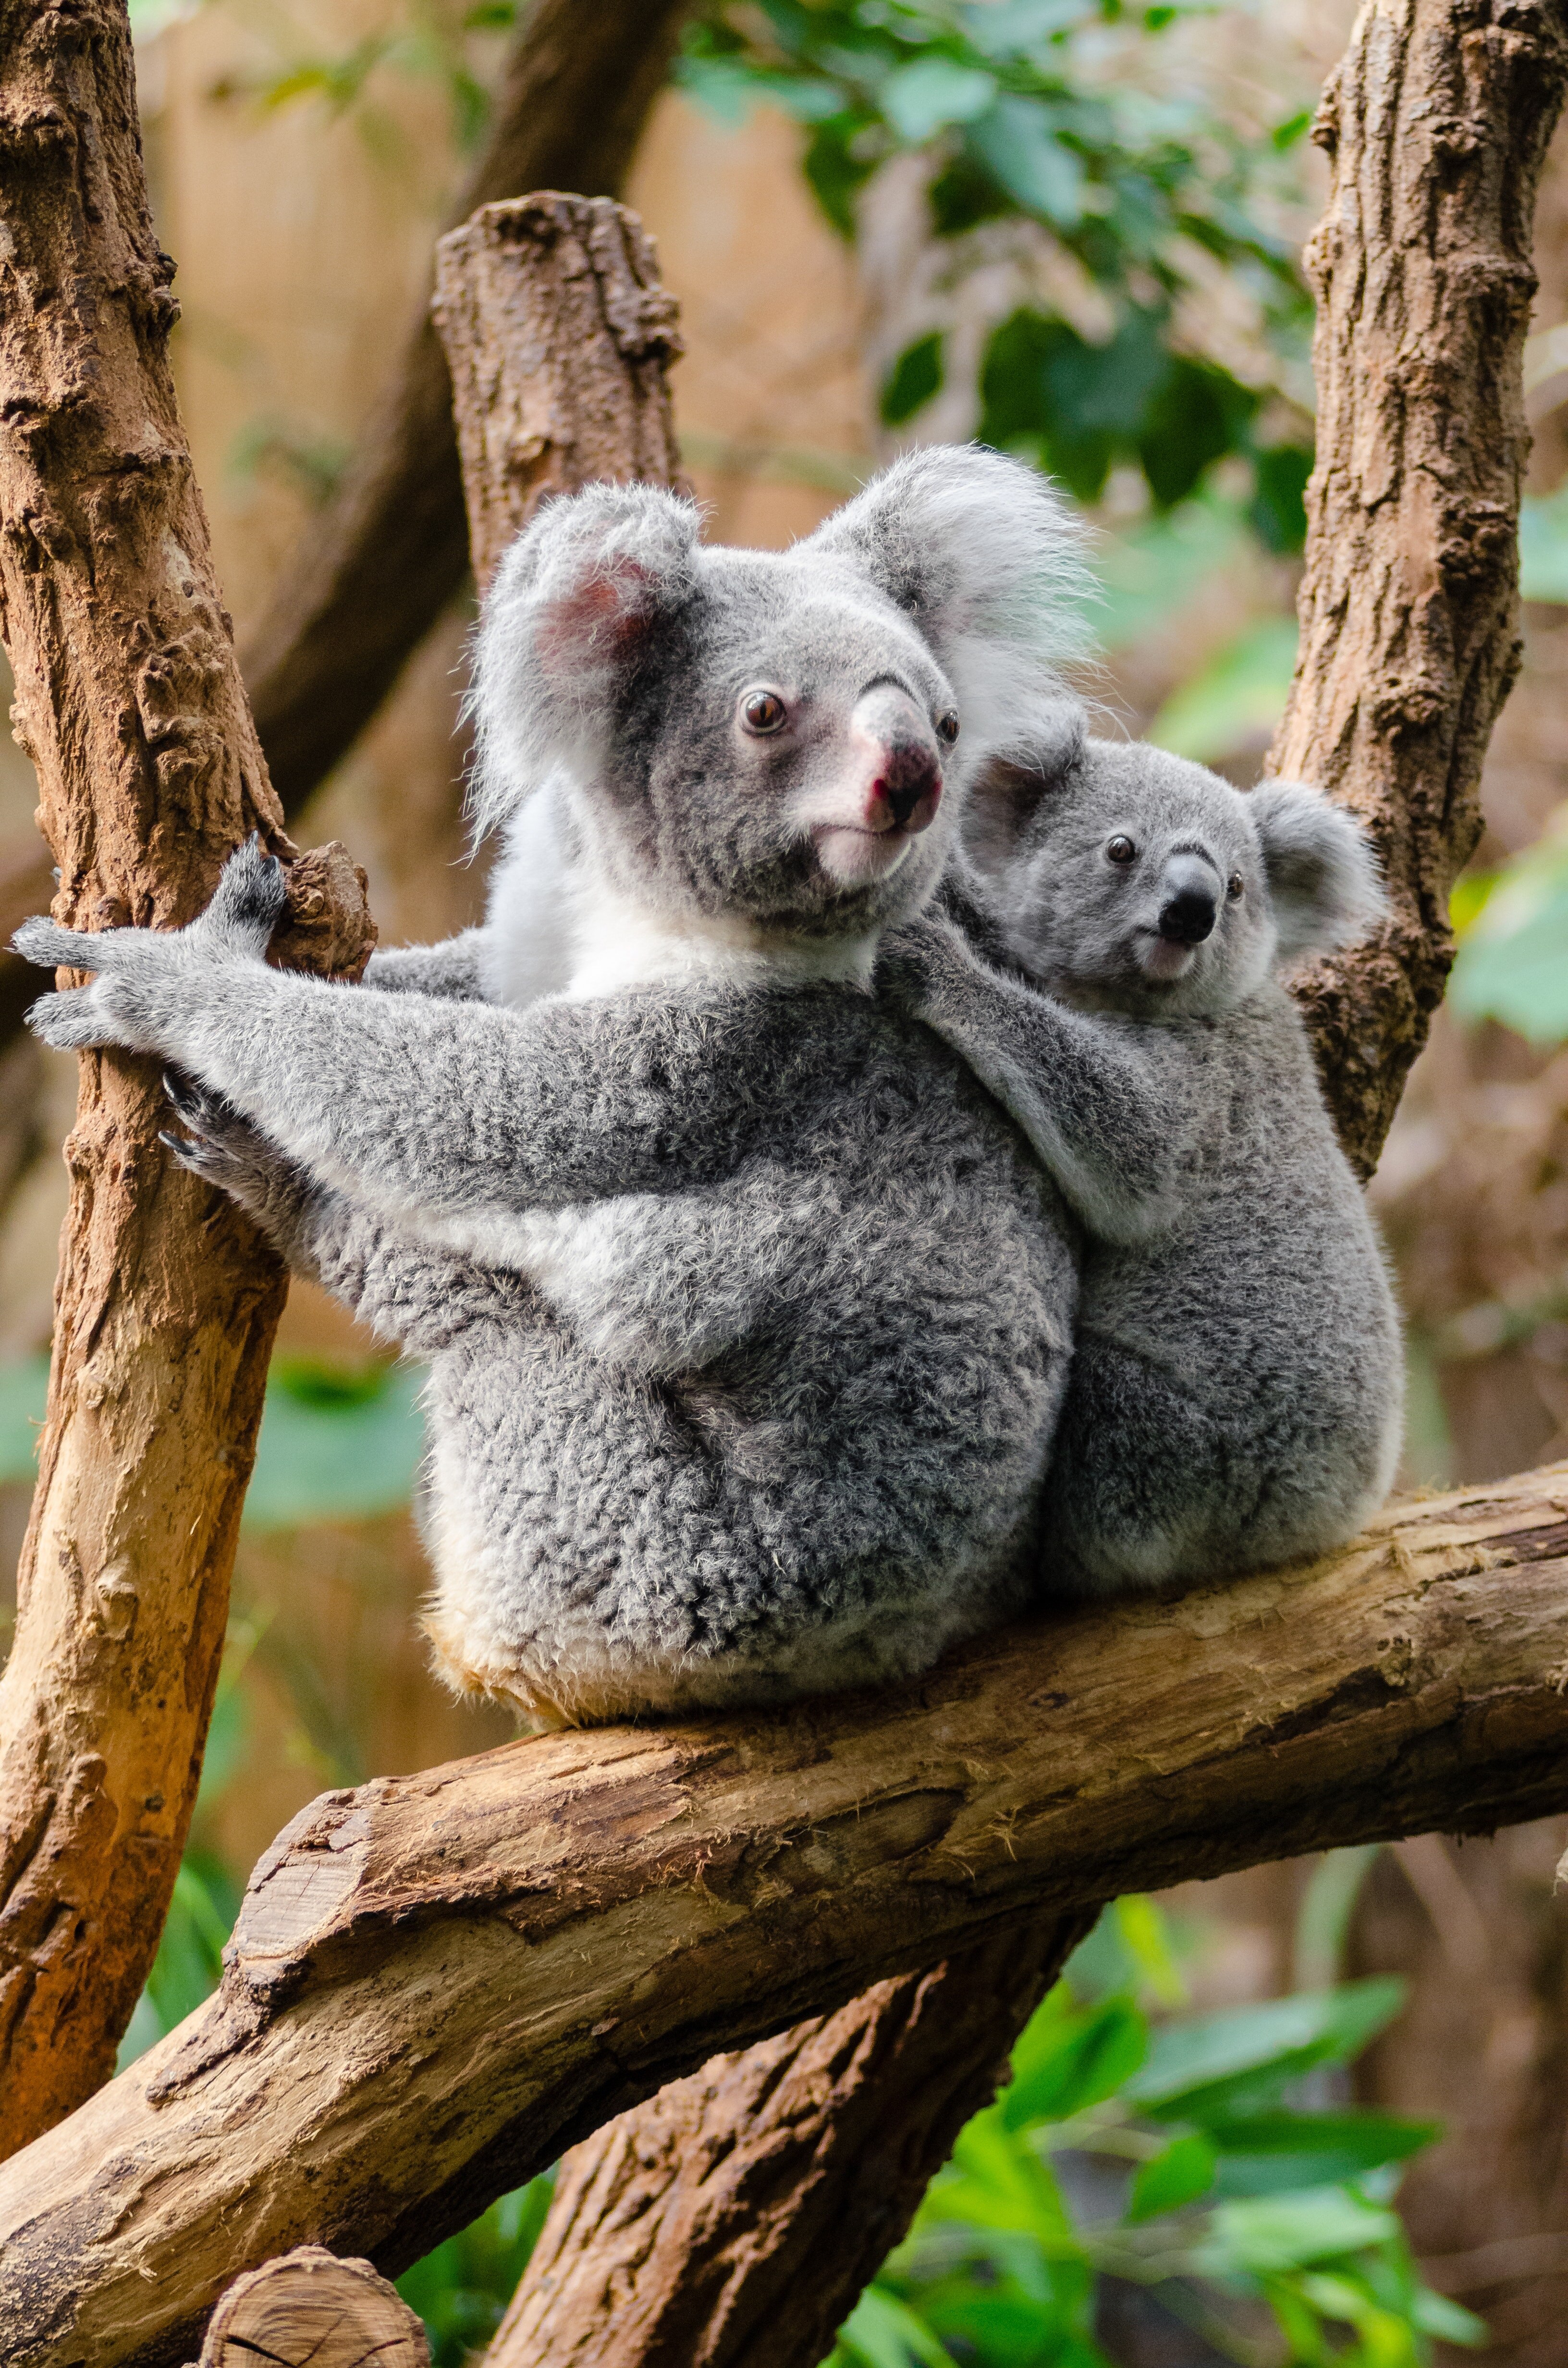 Koala Bears on a Tree Trunk